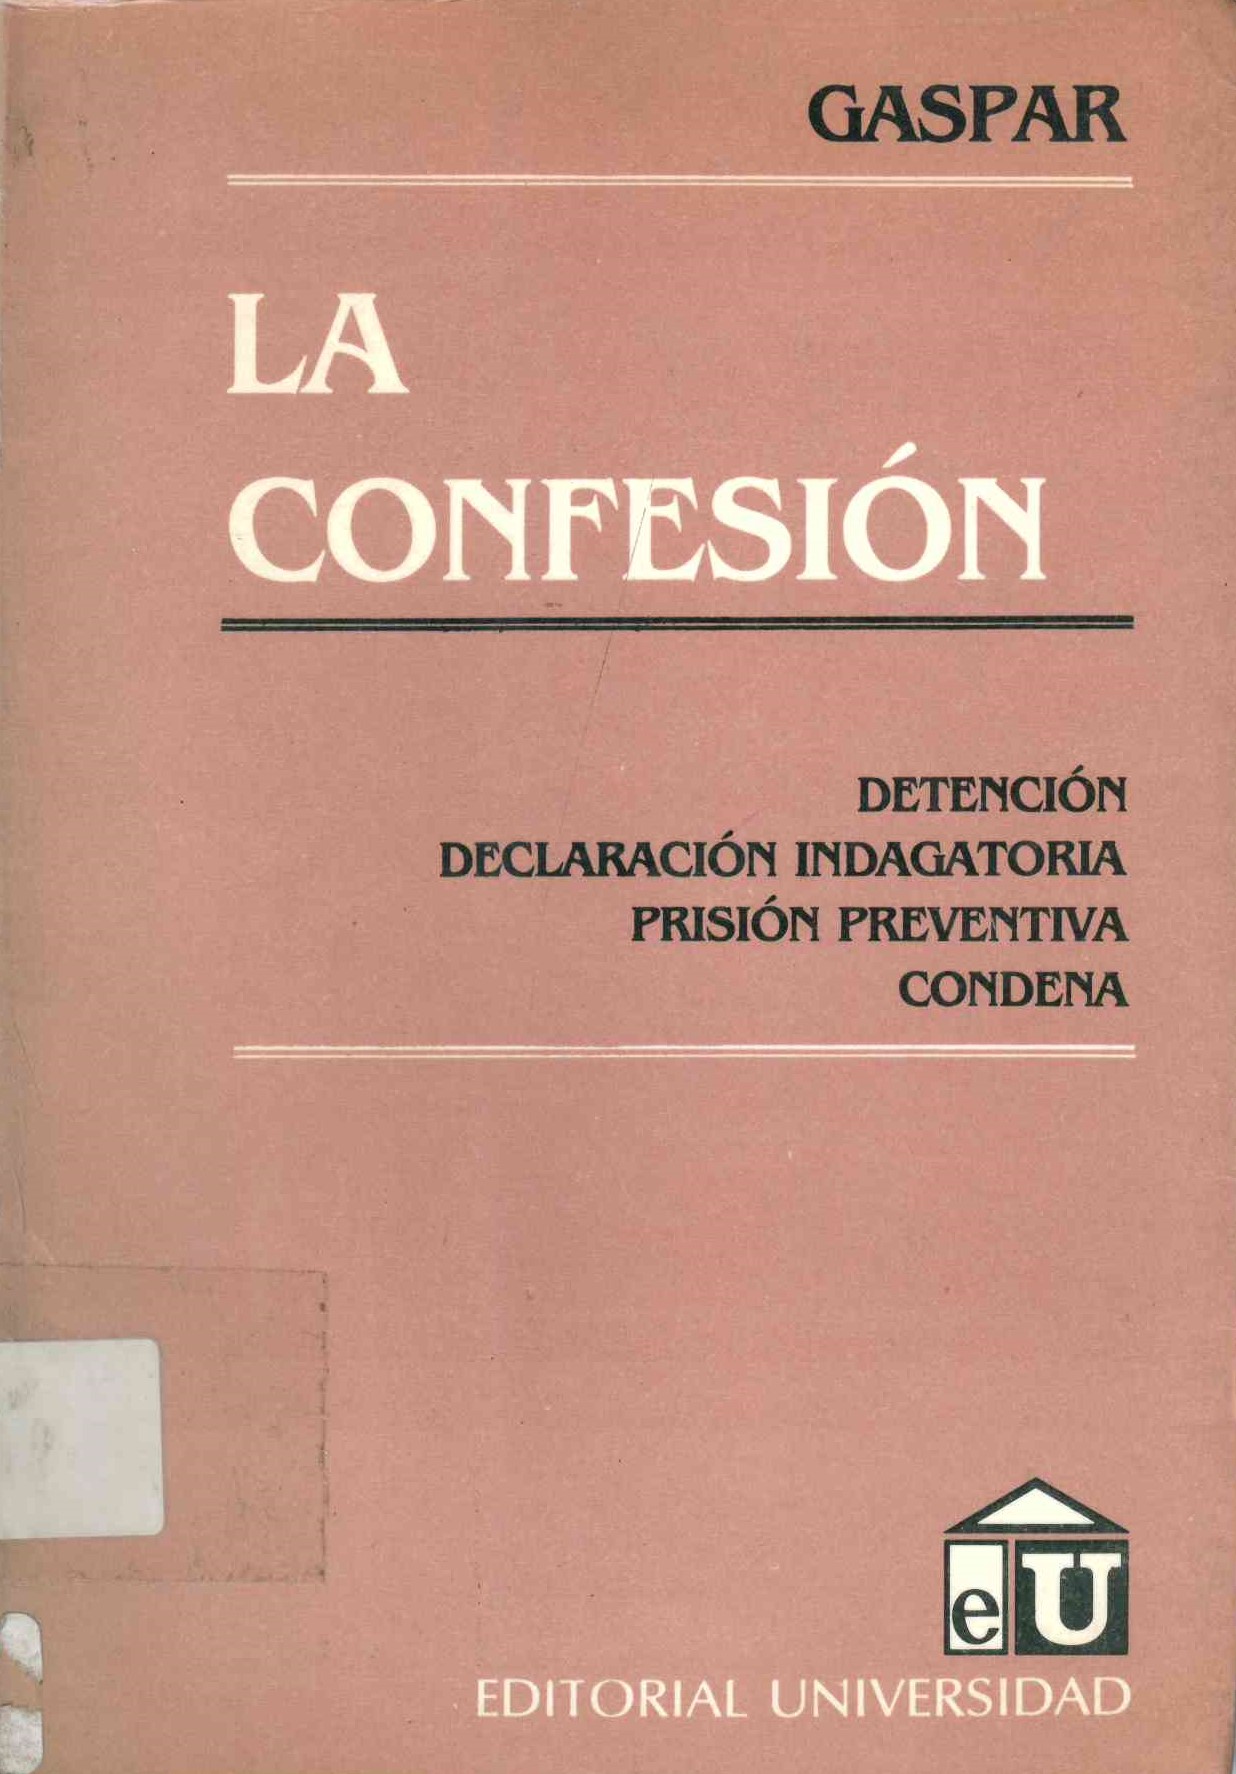 La Confesión : detención-Declaración indagatoria-Prisión Preventiva-Condena